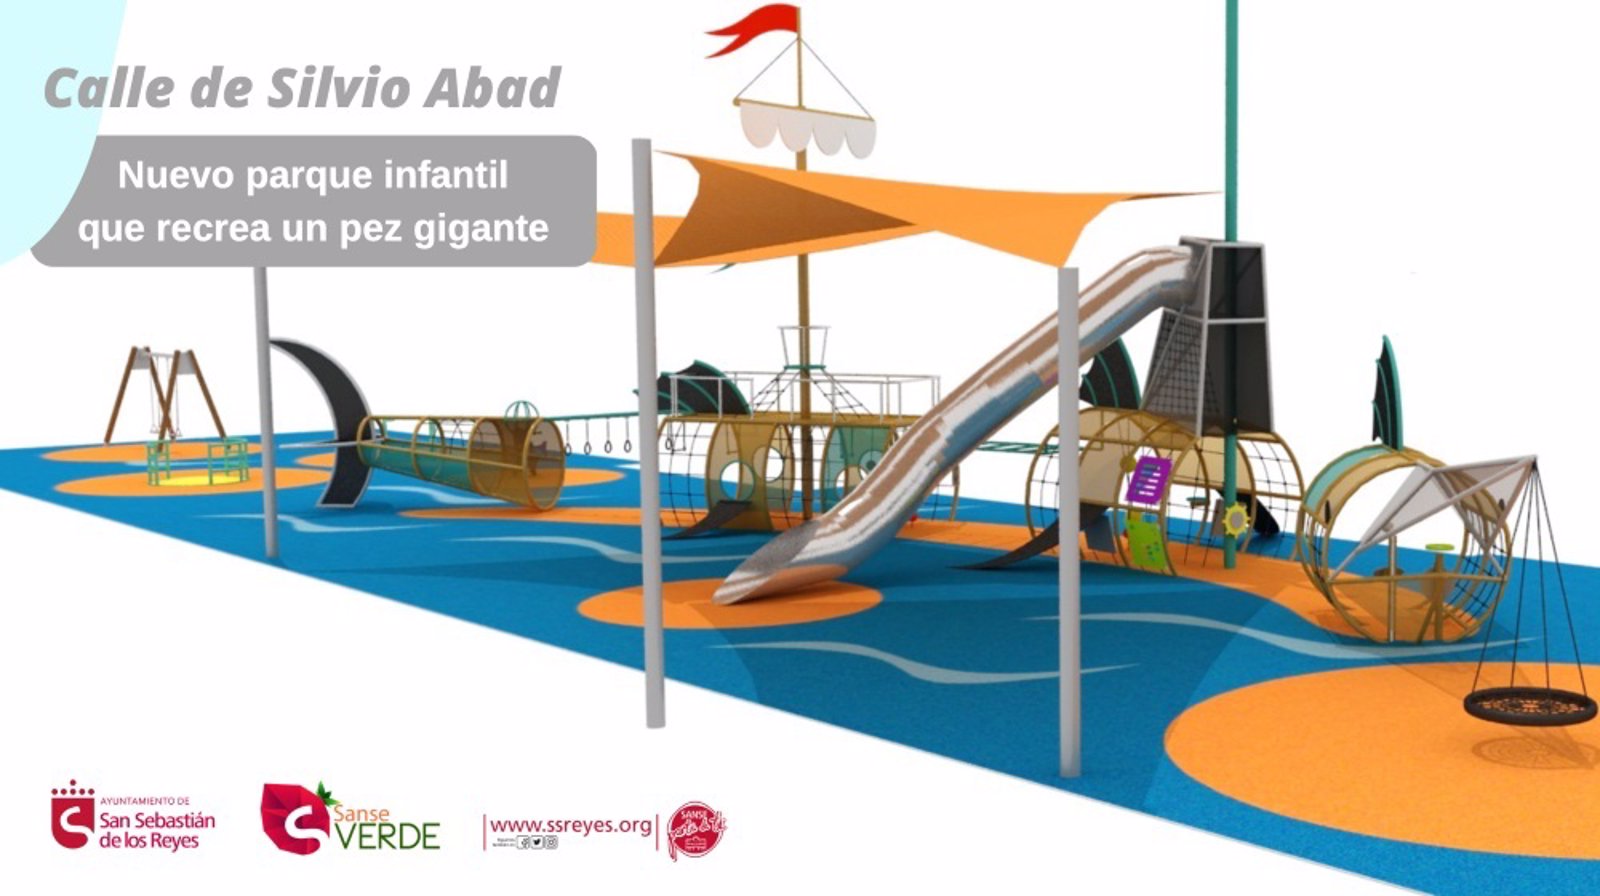 Sanse ha aprobado hacer 19 parques infantiles con 5,7 millones de presupuesto